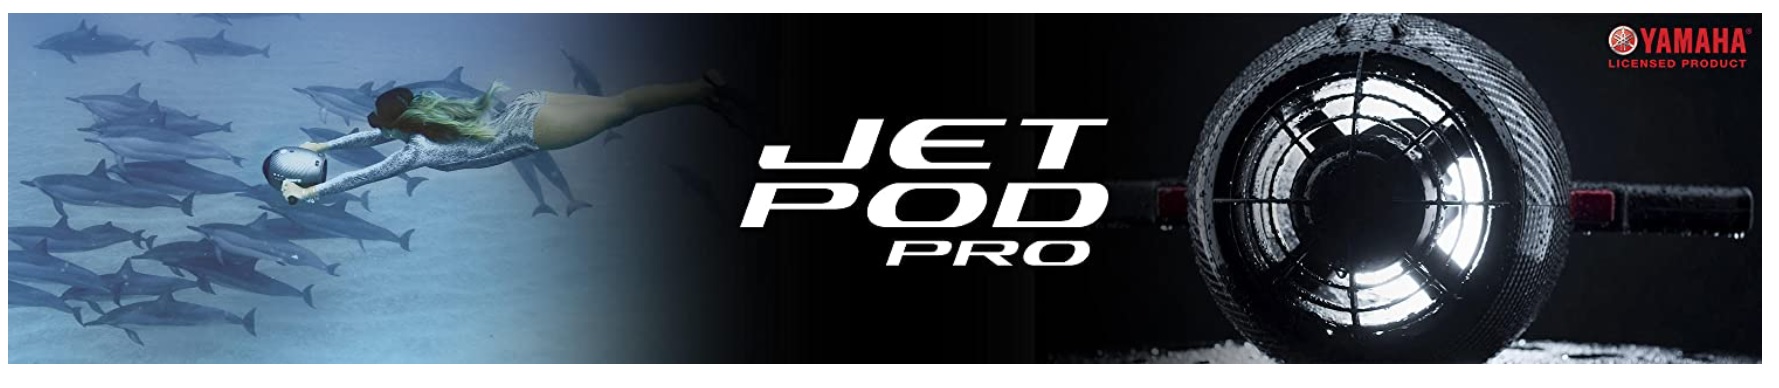 Yamaha-Jet-Pod-Pro-Sea-Scotter